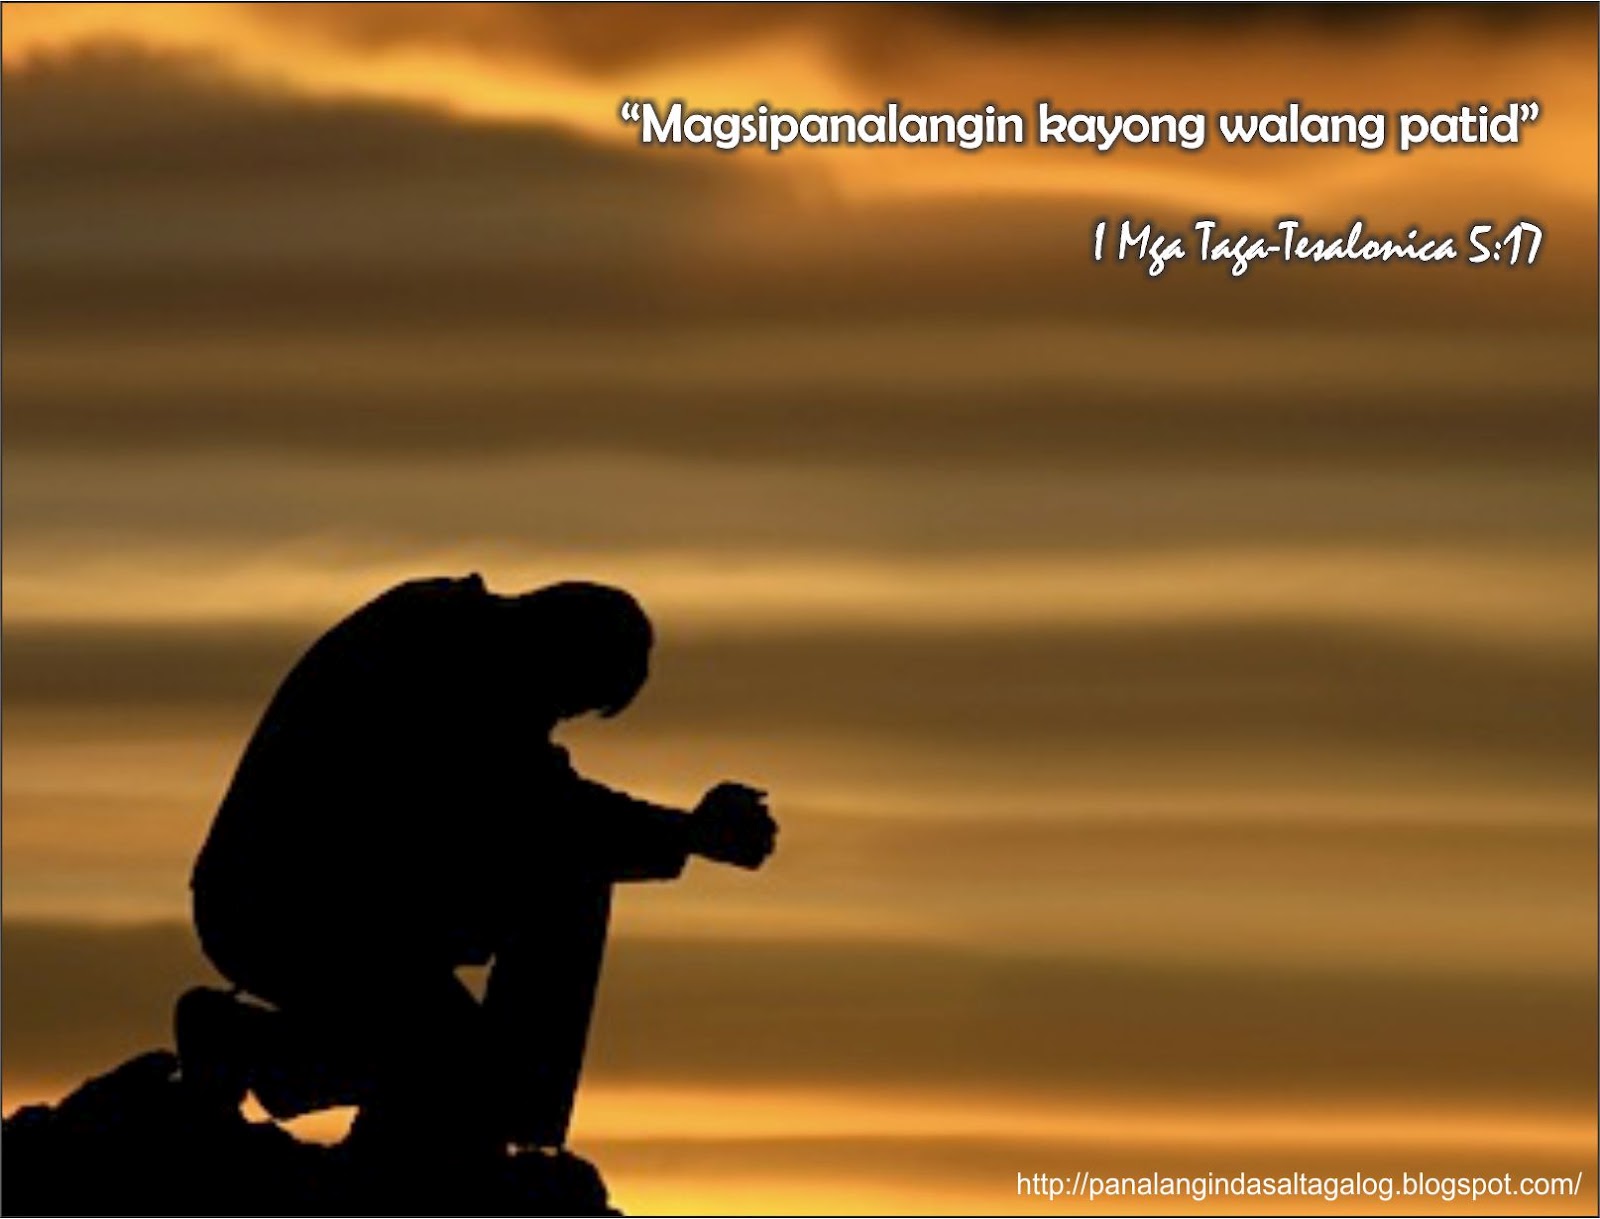 Mga Tagalog na Panalangin: Tagalog Bible Verse Picture - Pagdarasal